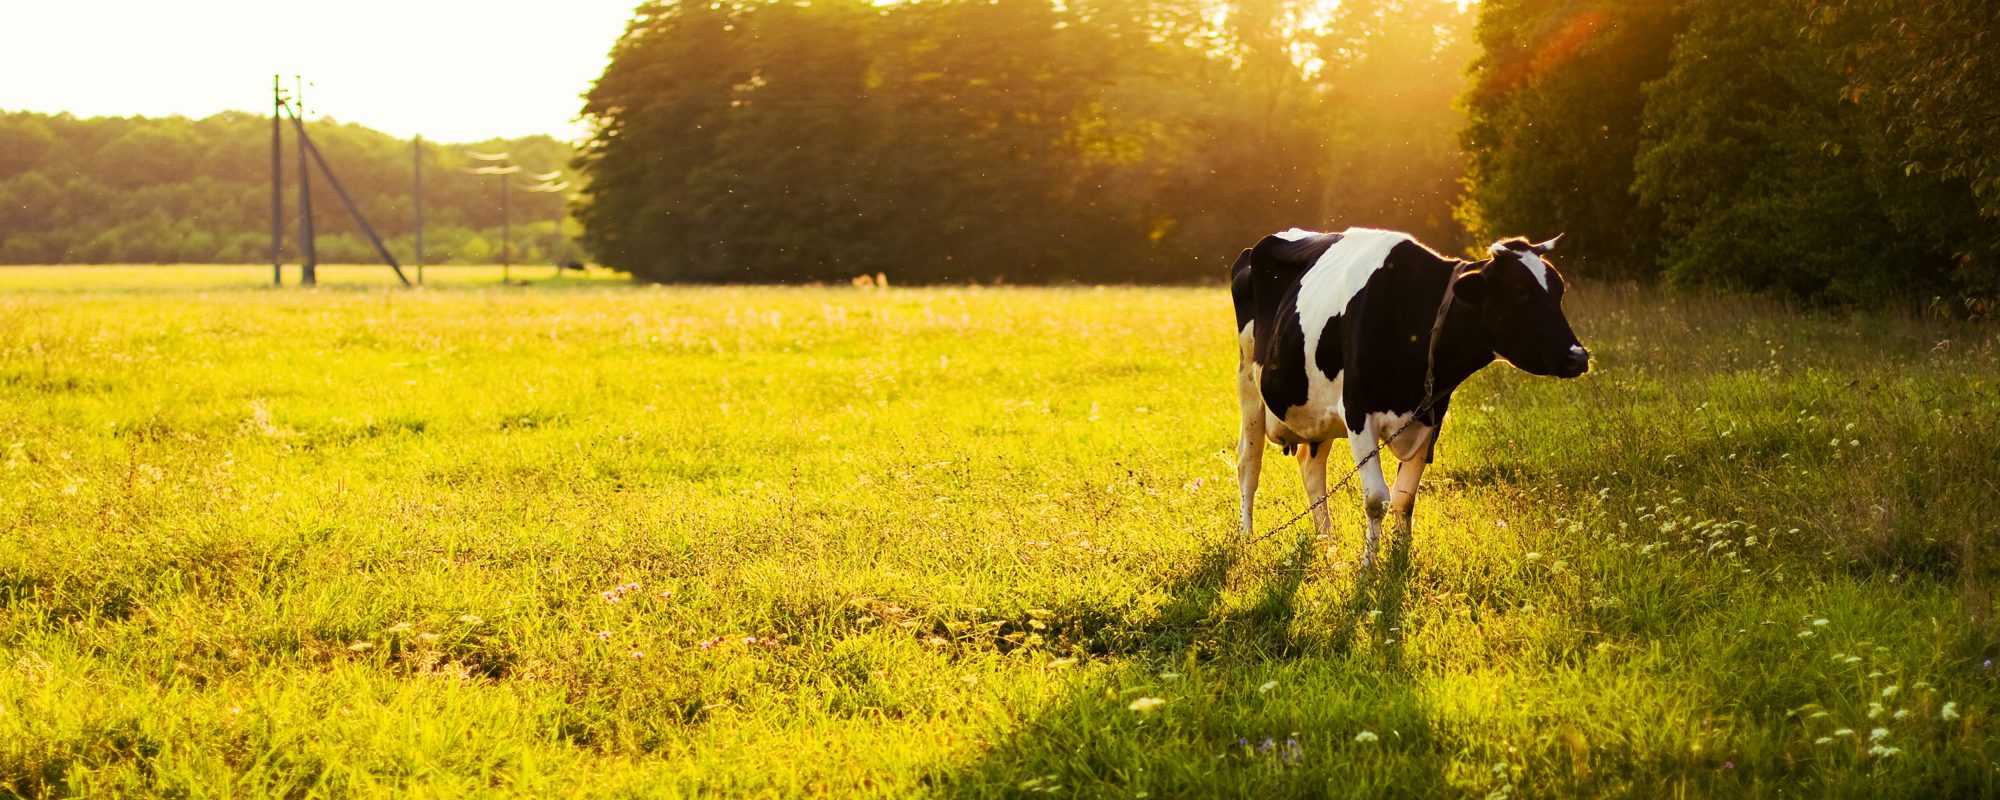 vaca-pastando-prado